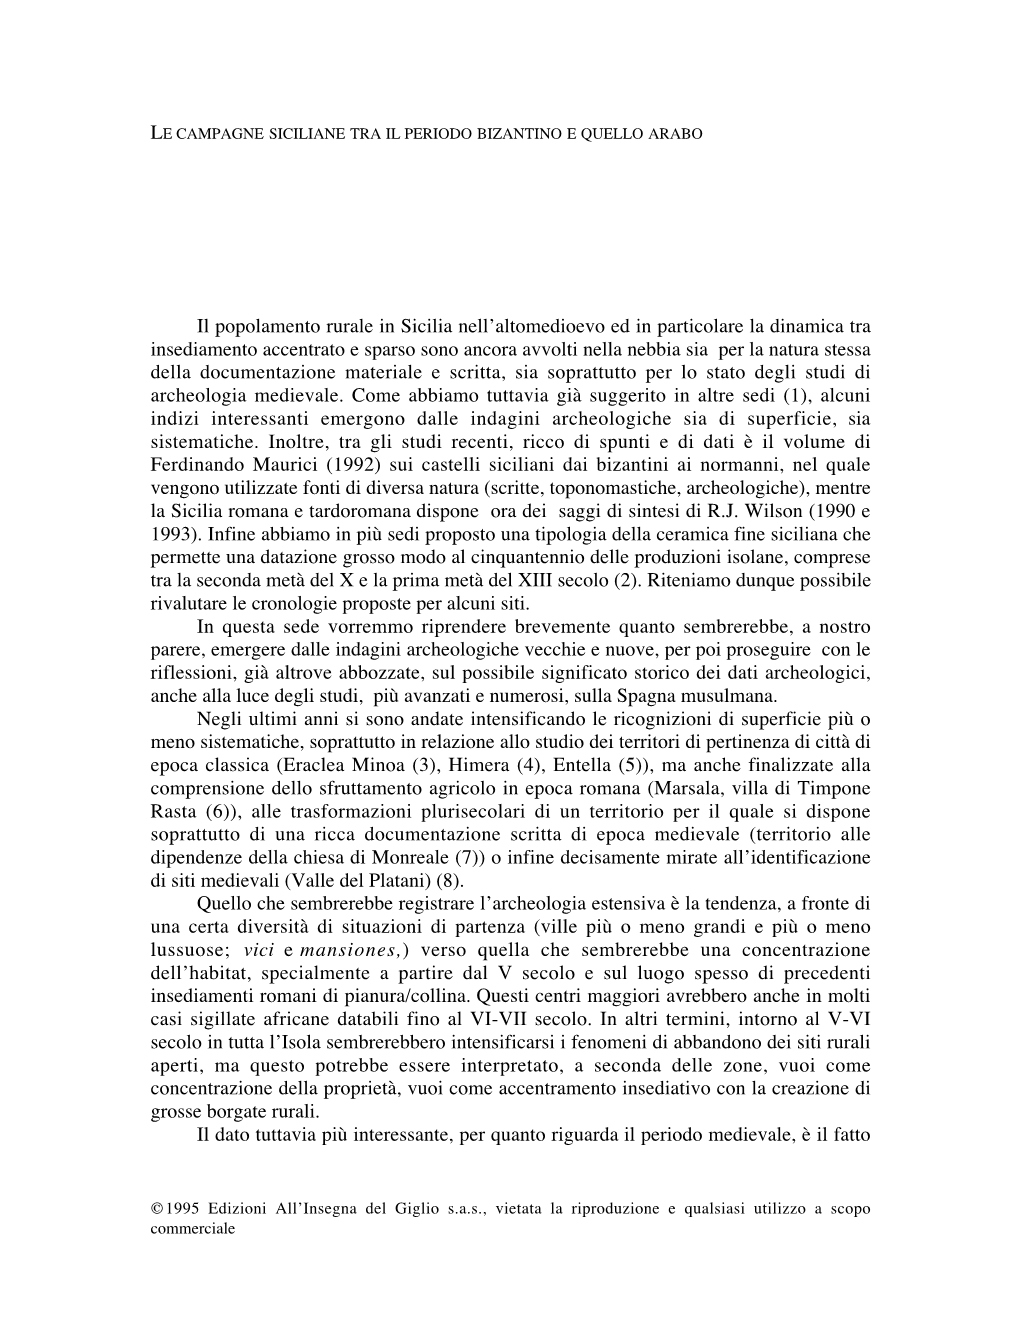 A. MOLINARI, Le Campagne Siciliane Tra Il Periodo Bizantino E Quello Arabo, P